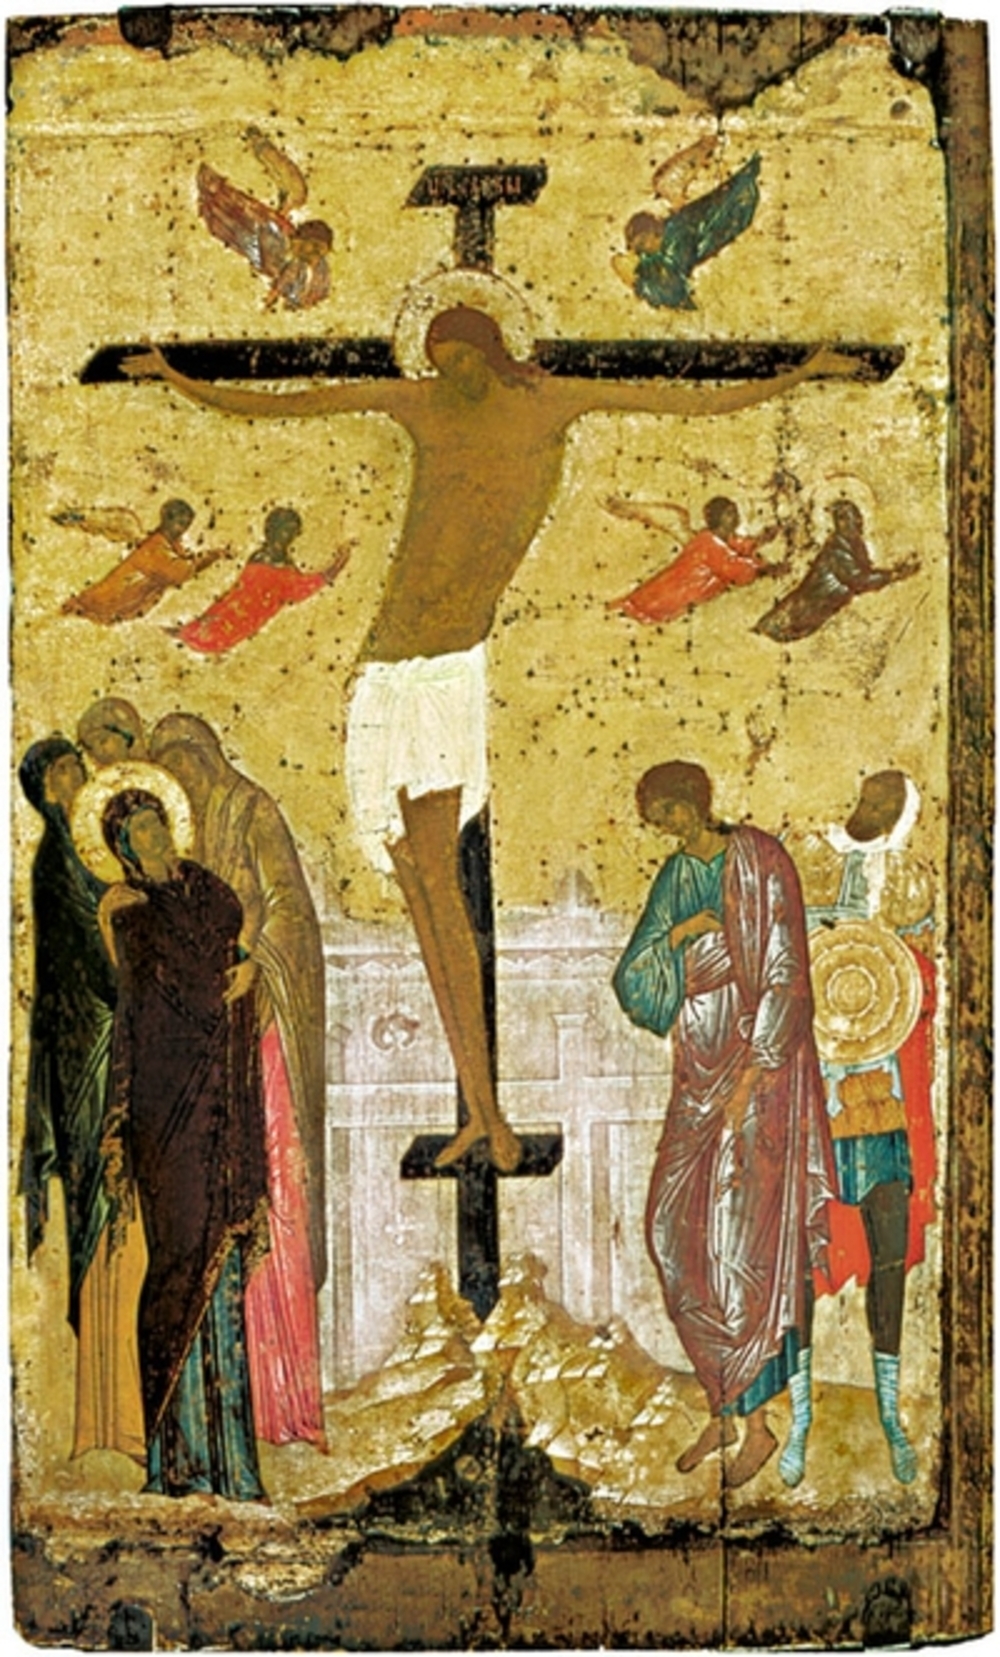 Ukřižování, ikona, konec 15. století